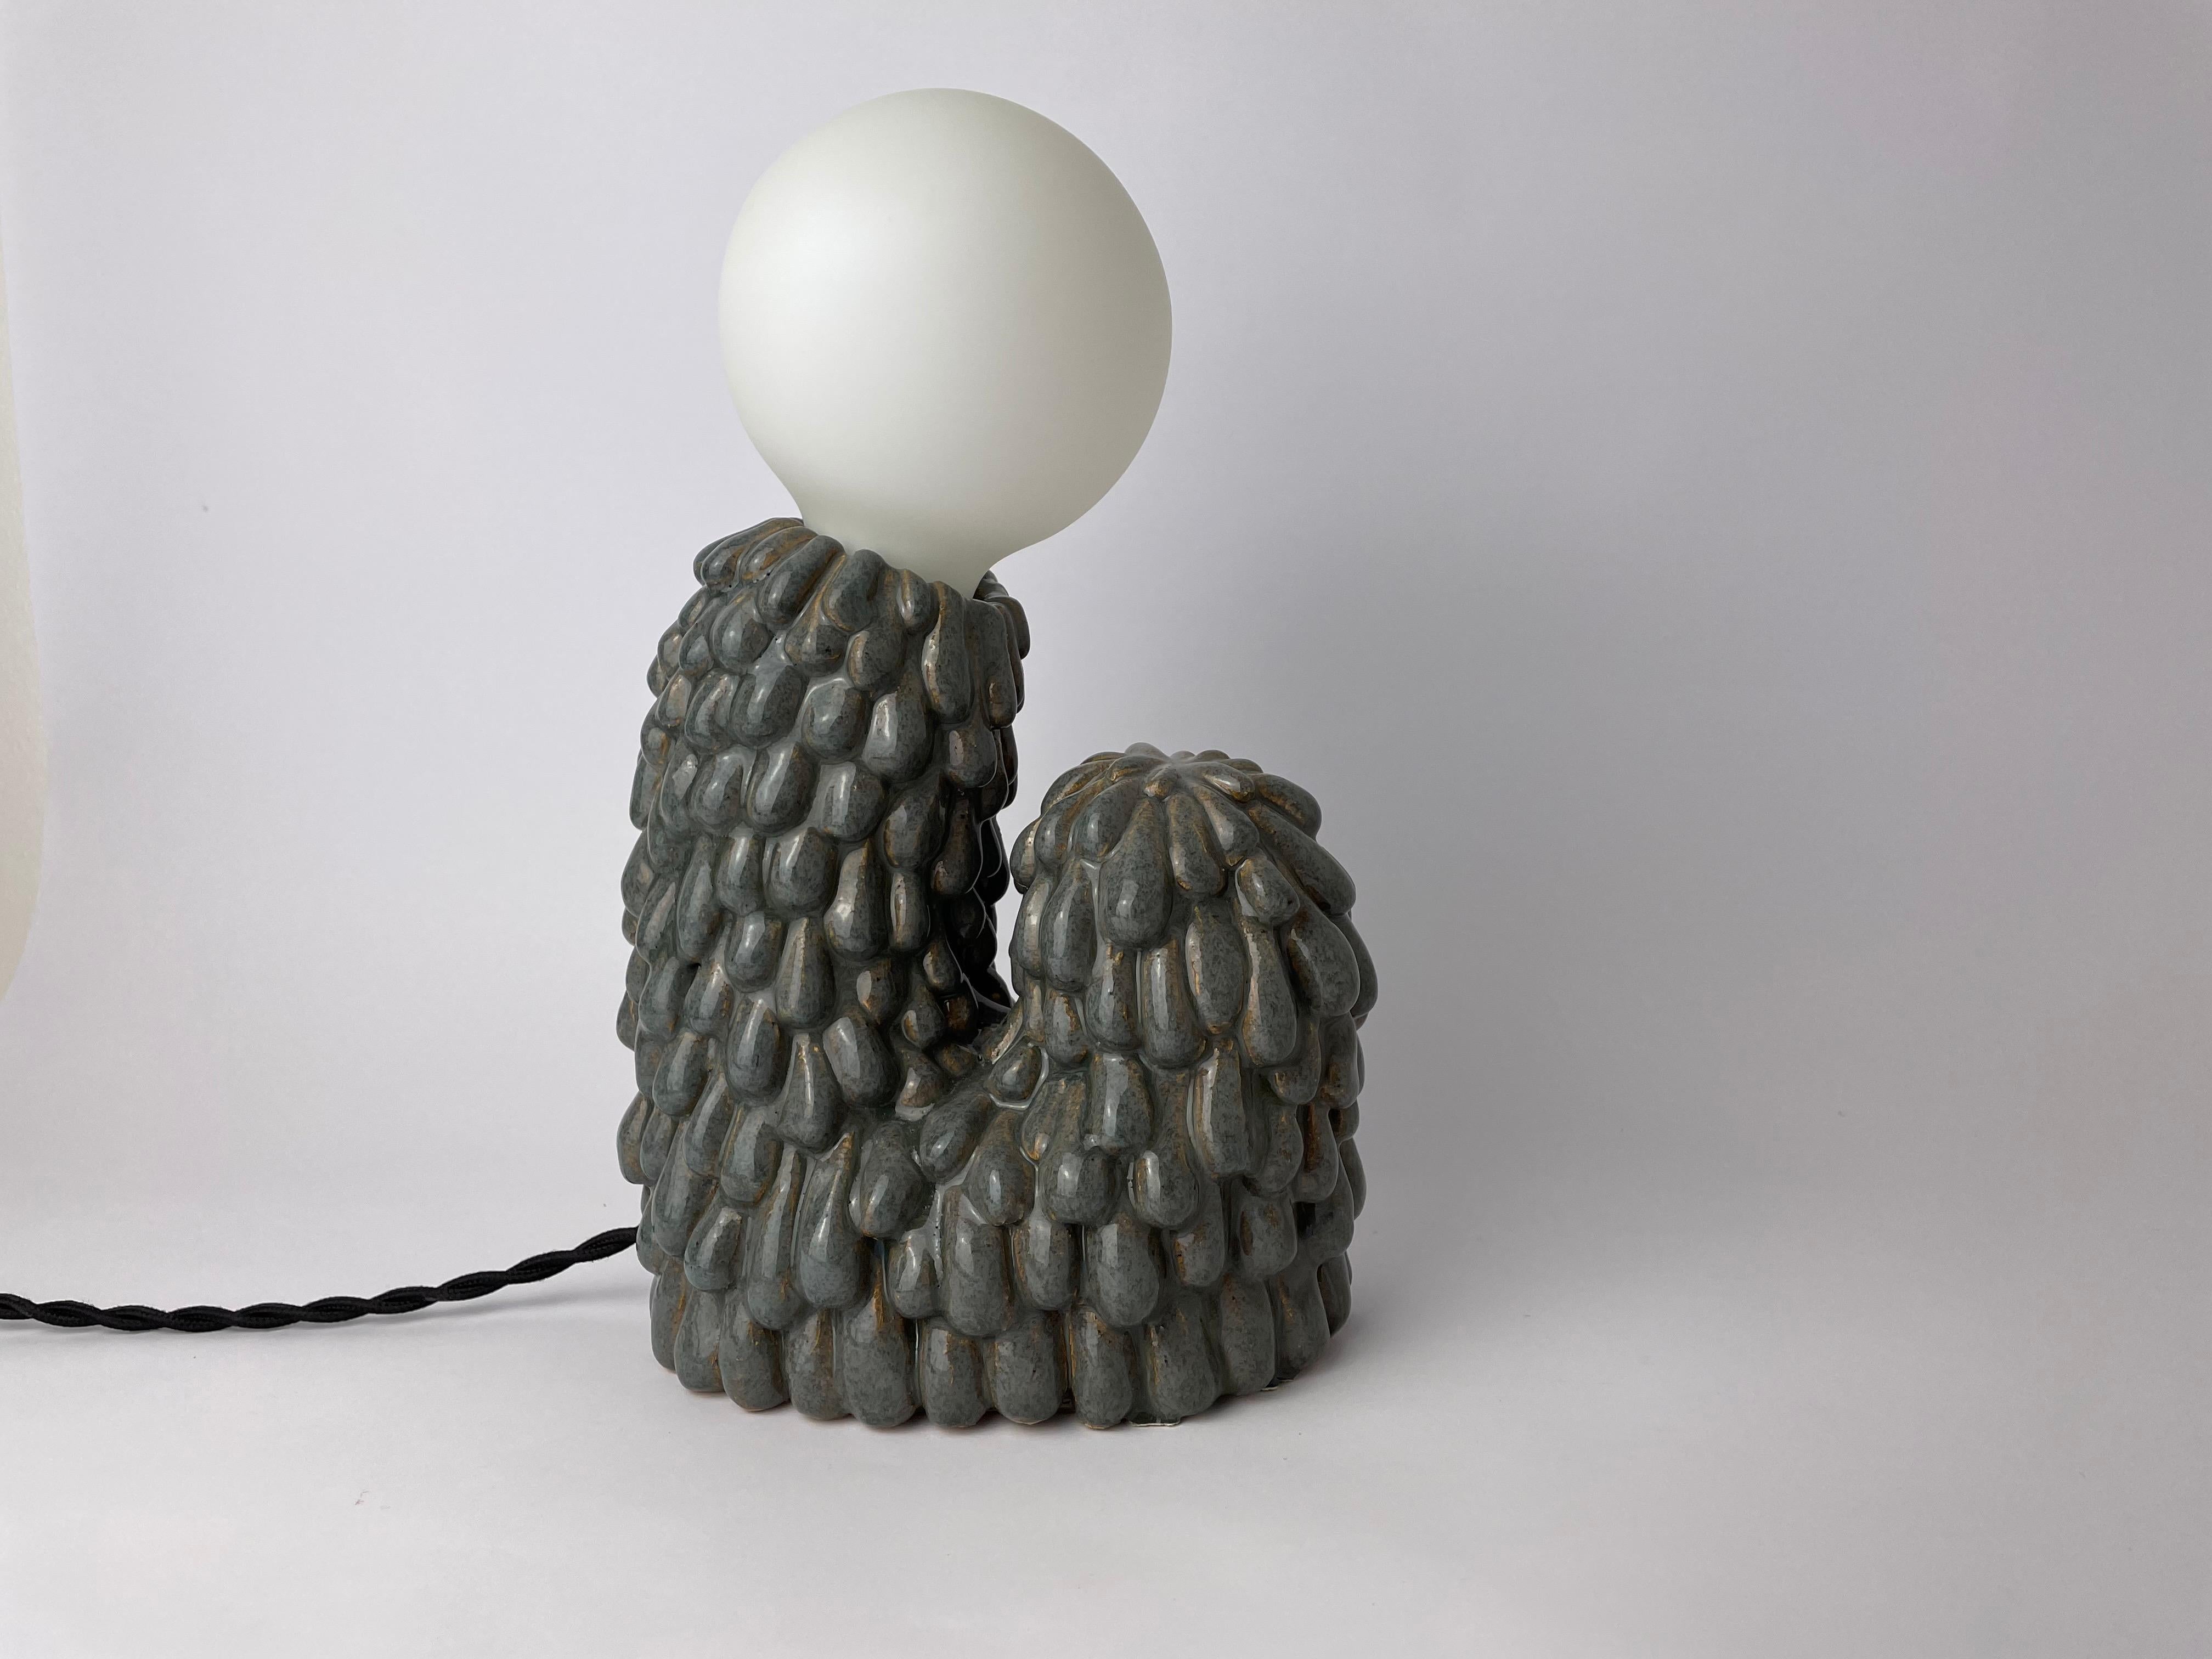 Petite lampe évolutive par HS Studio
Collection Morphique
Dimensions : 28 x 18 x 9cm
Matériaux : Céramique

Egalement disponible : 43 x 40 x 15cm 

Hannah Simpson est une artiste céramiste, basée dans le Kent, au Royaume-Uni. Passionnée par la